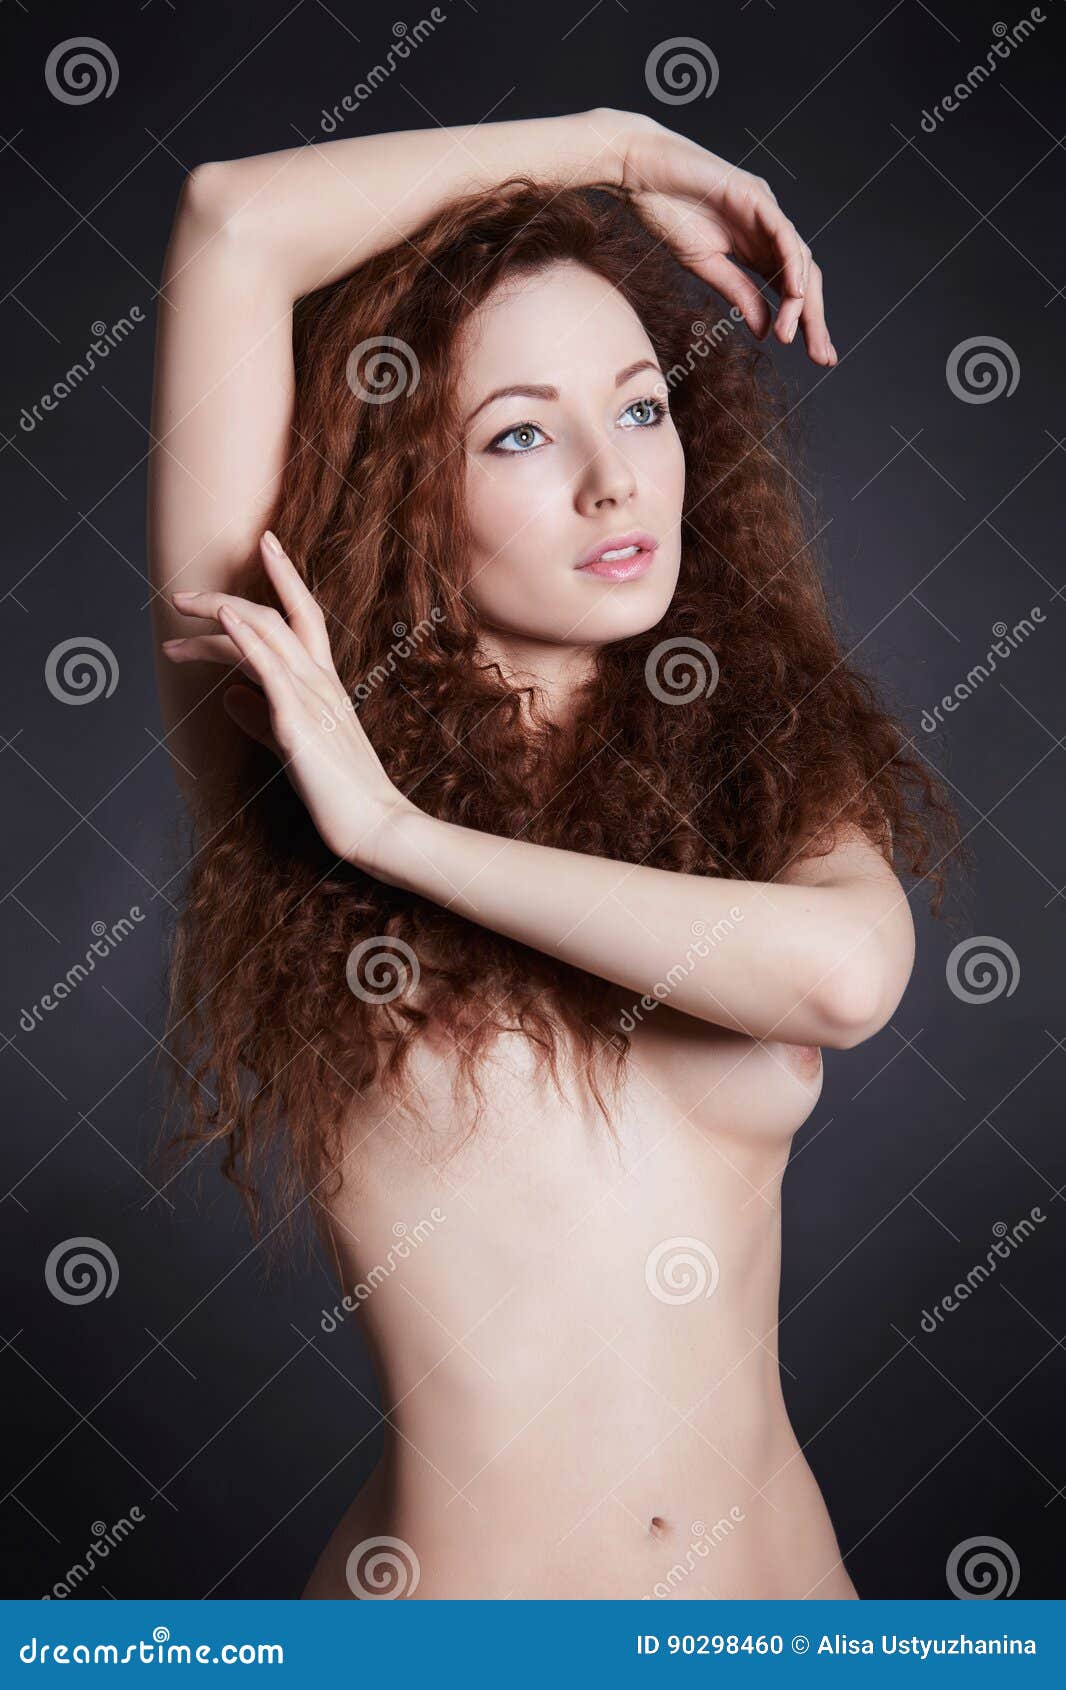 aditya bhoite add naked women with curly hair photo